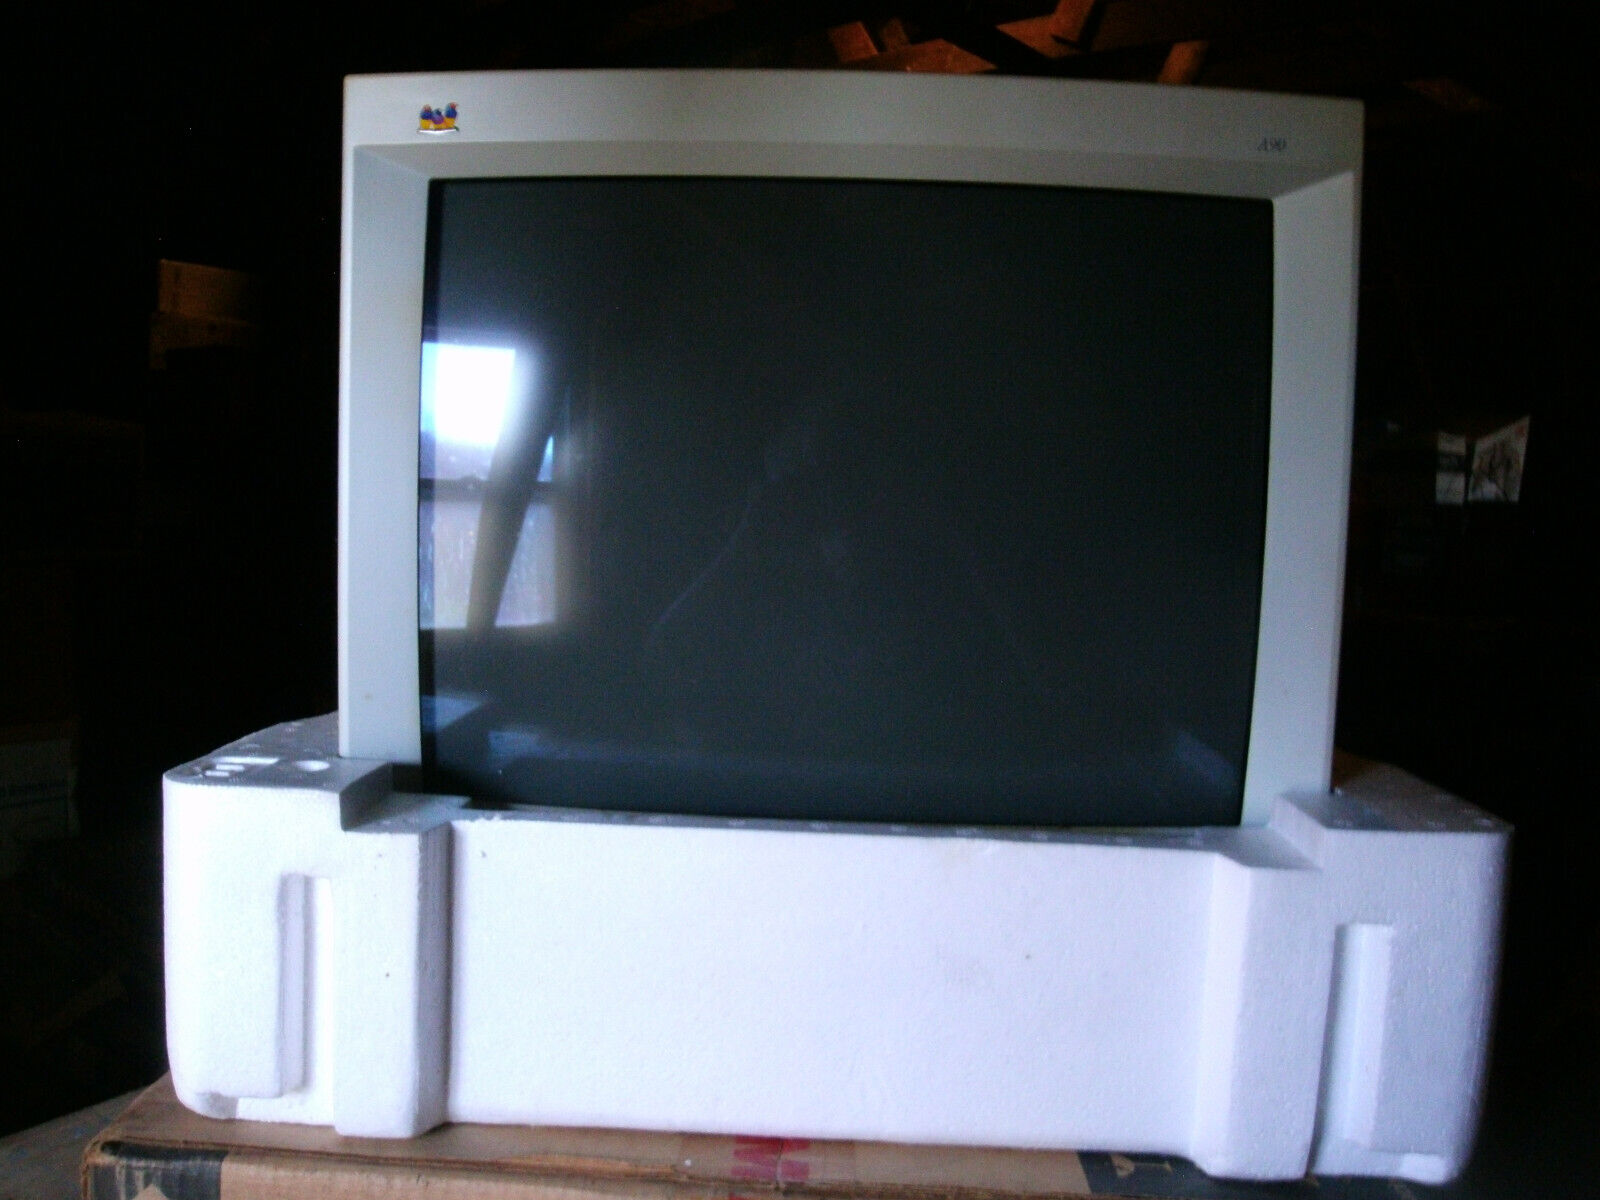 RETRO GAMING ViewSonic A90 19” CRT Monitor, Orig Box,  1600 x 1280 res, pristine